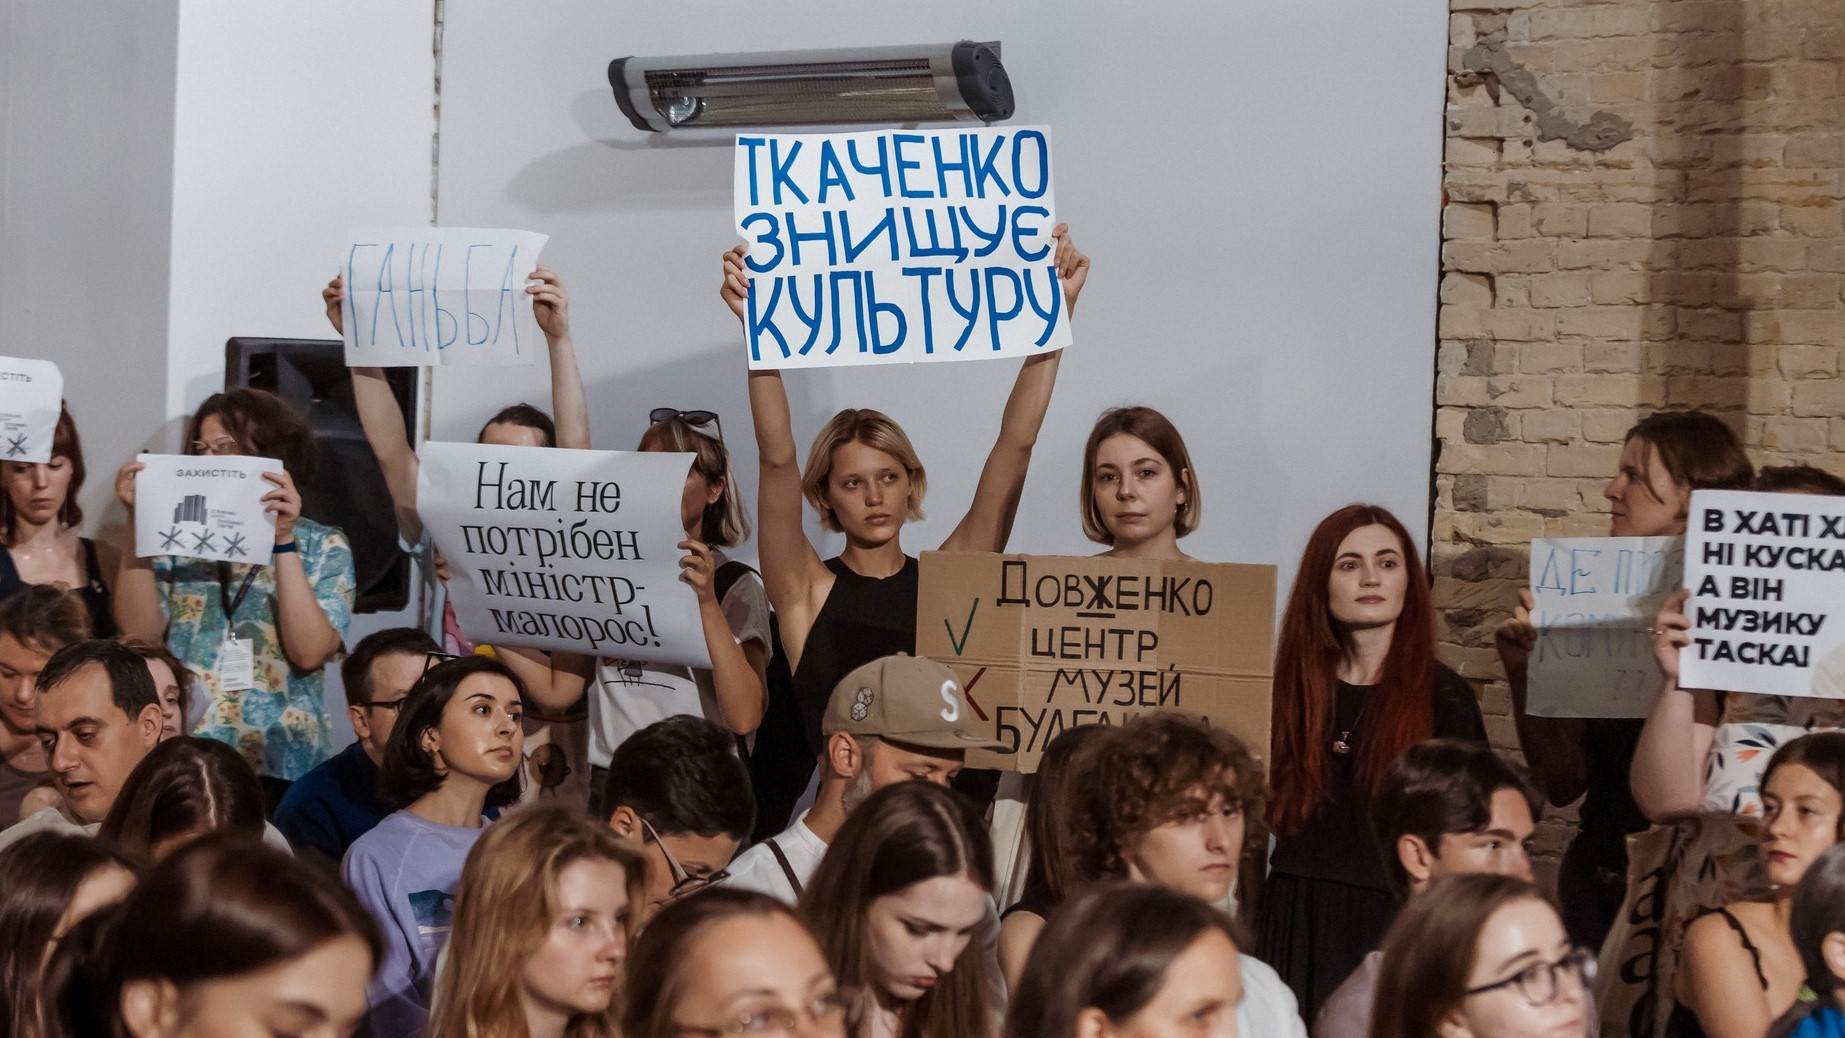 Діалог мовою петицій. Чому вже втретє збирають голоси за звільнення Олександра Ткаченка - Фото